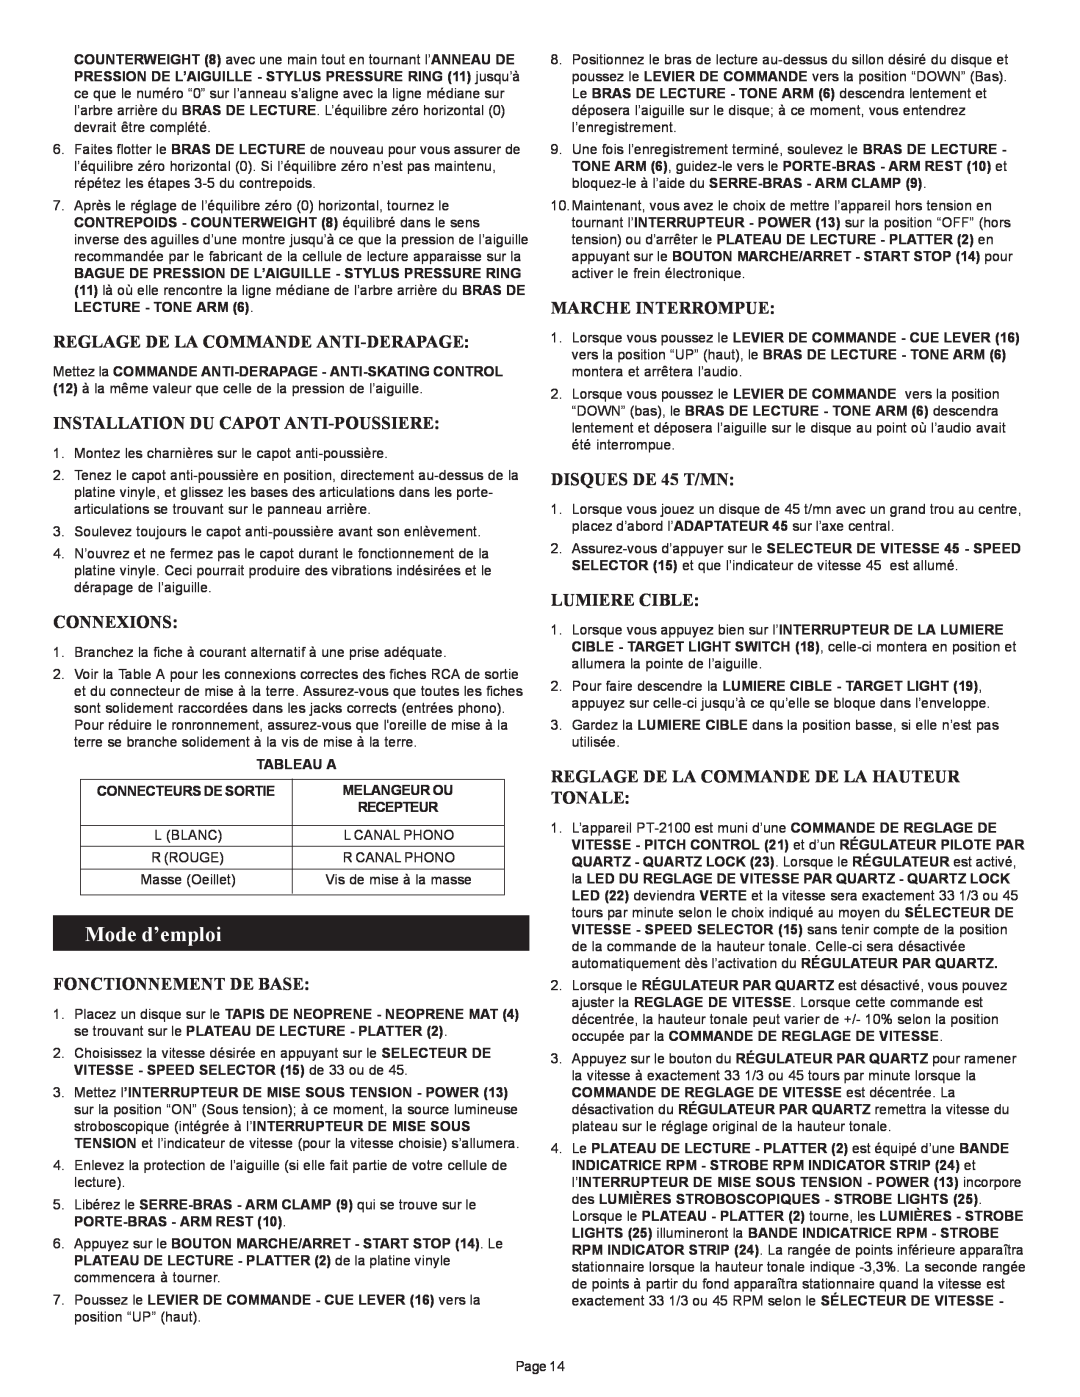 Gemini PT 2100 manual Mode d’emploi, Reglage De La Commande Anti-Derapage, Installation Du Capot Anti-Poussiere, Connexions 